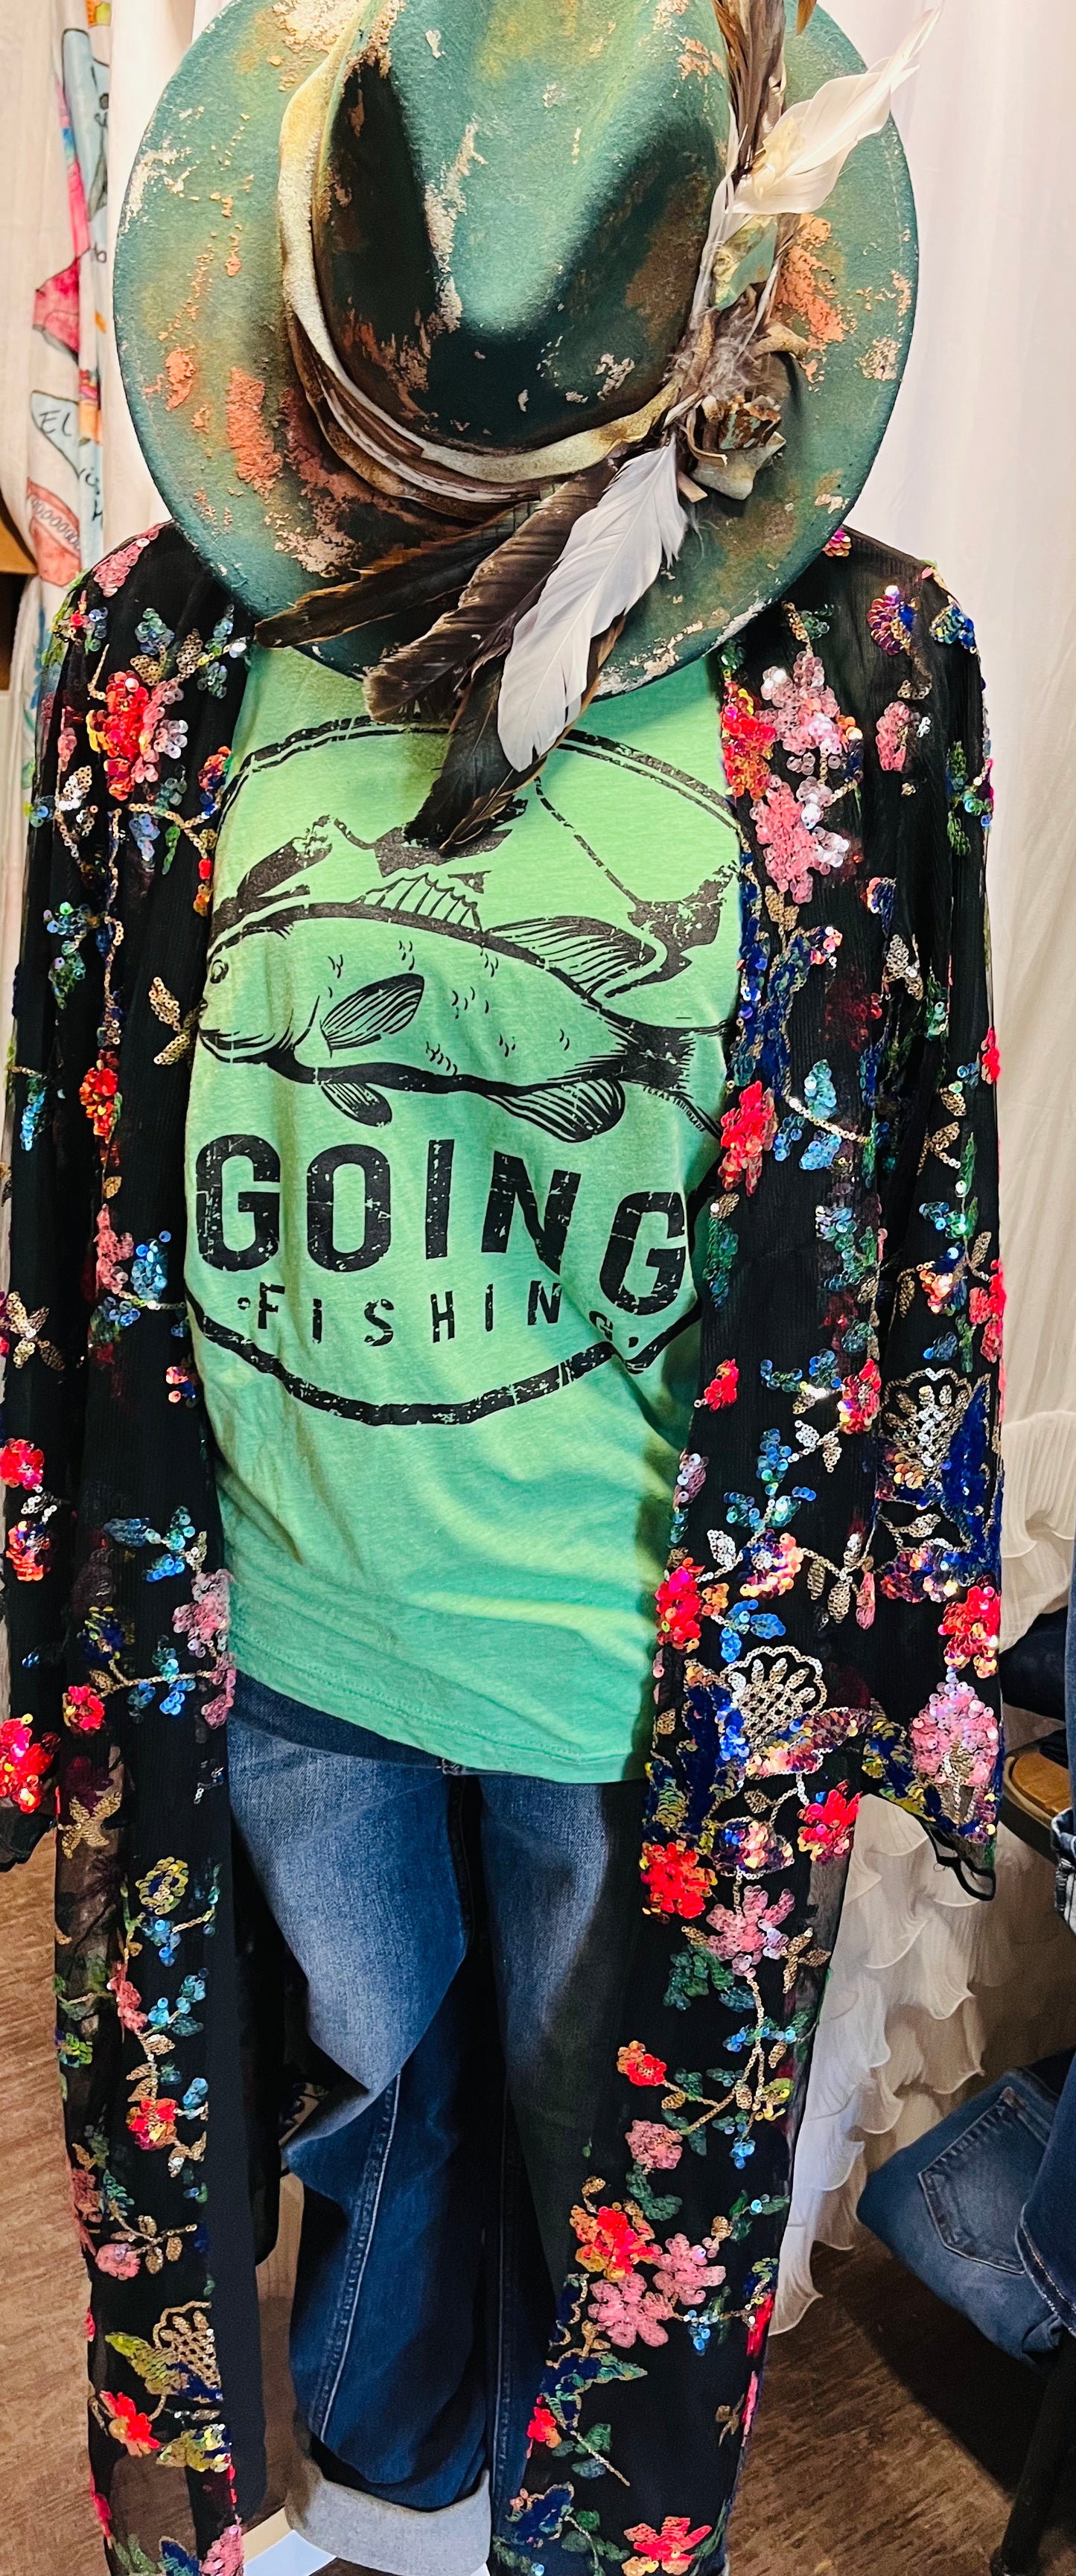 Going Fishing -